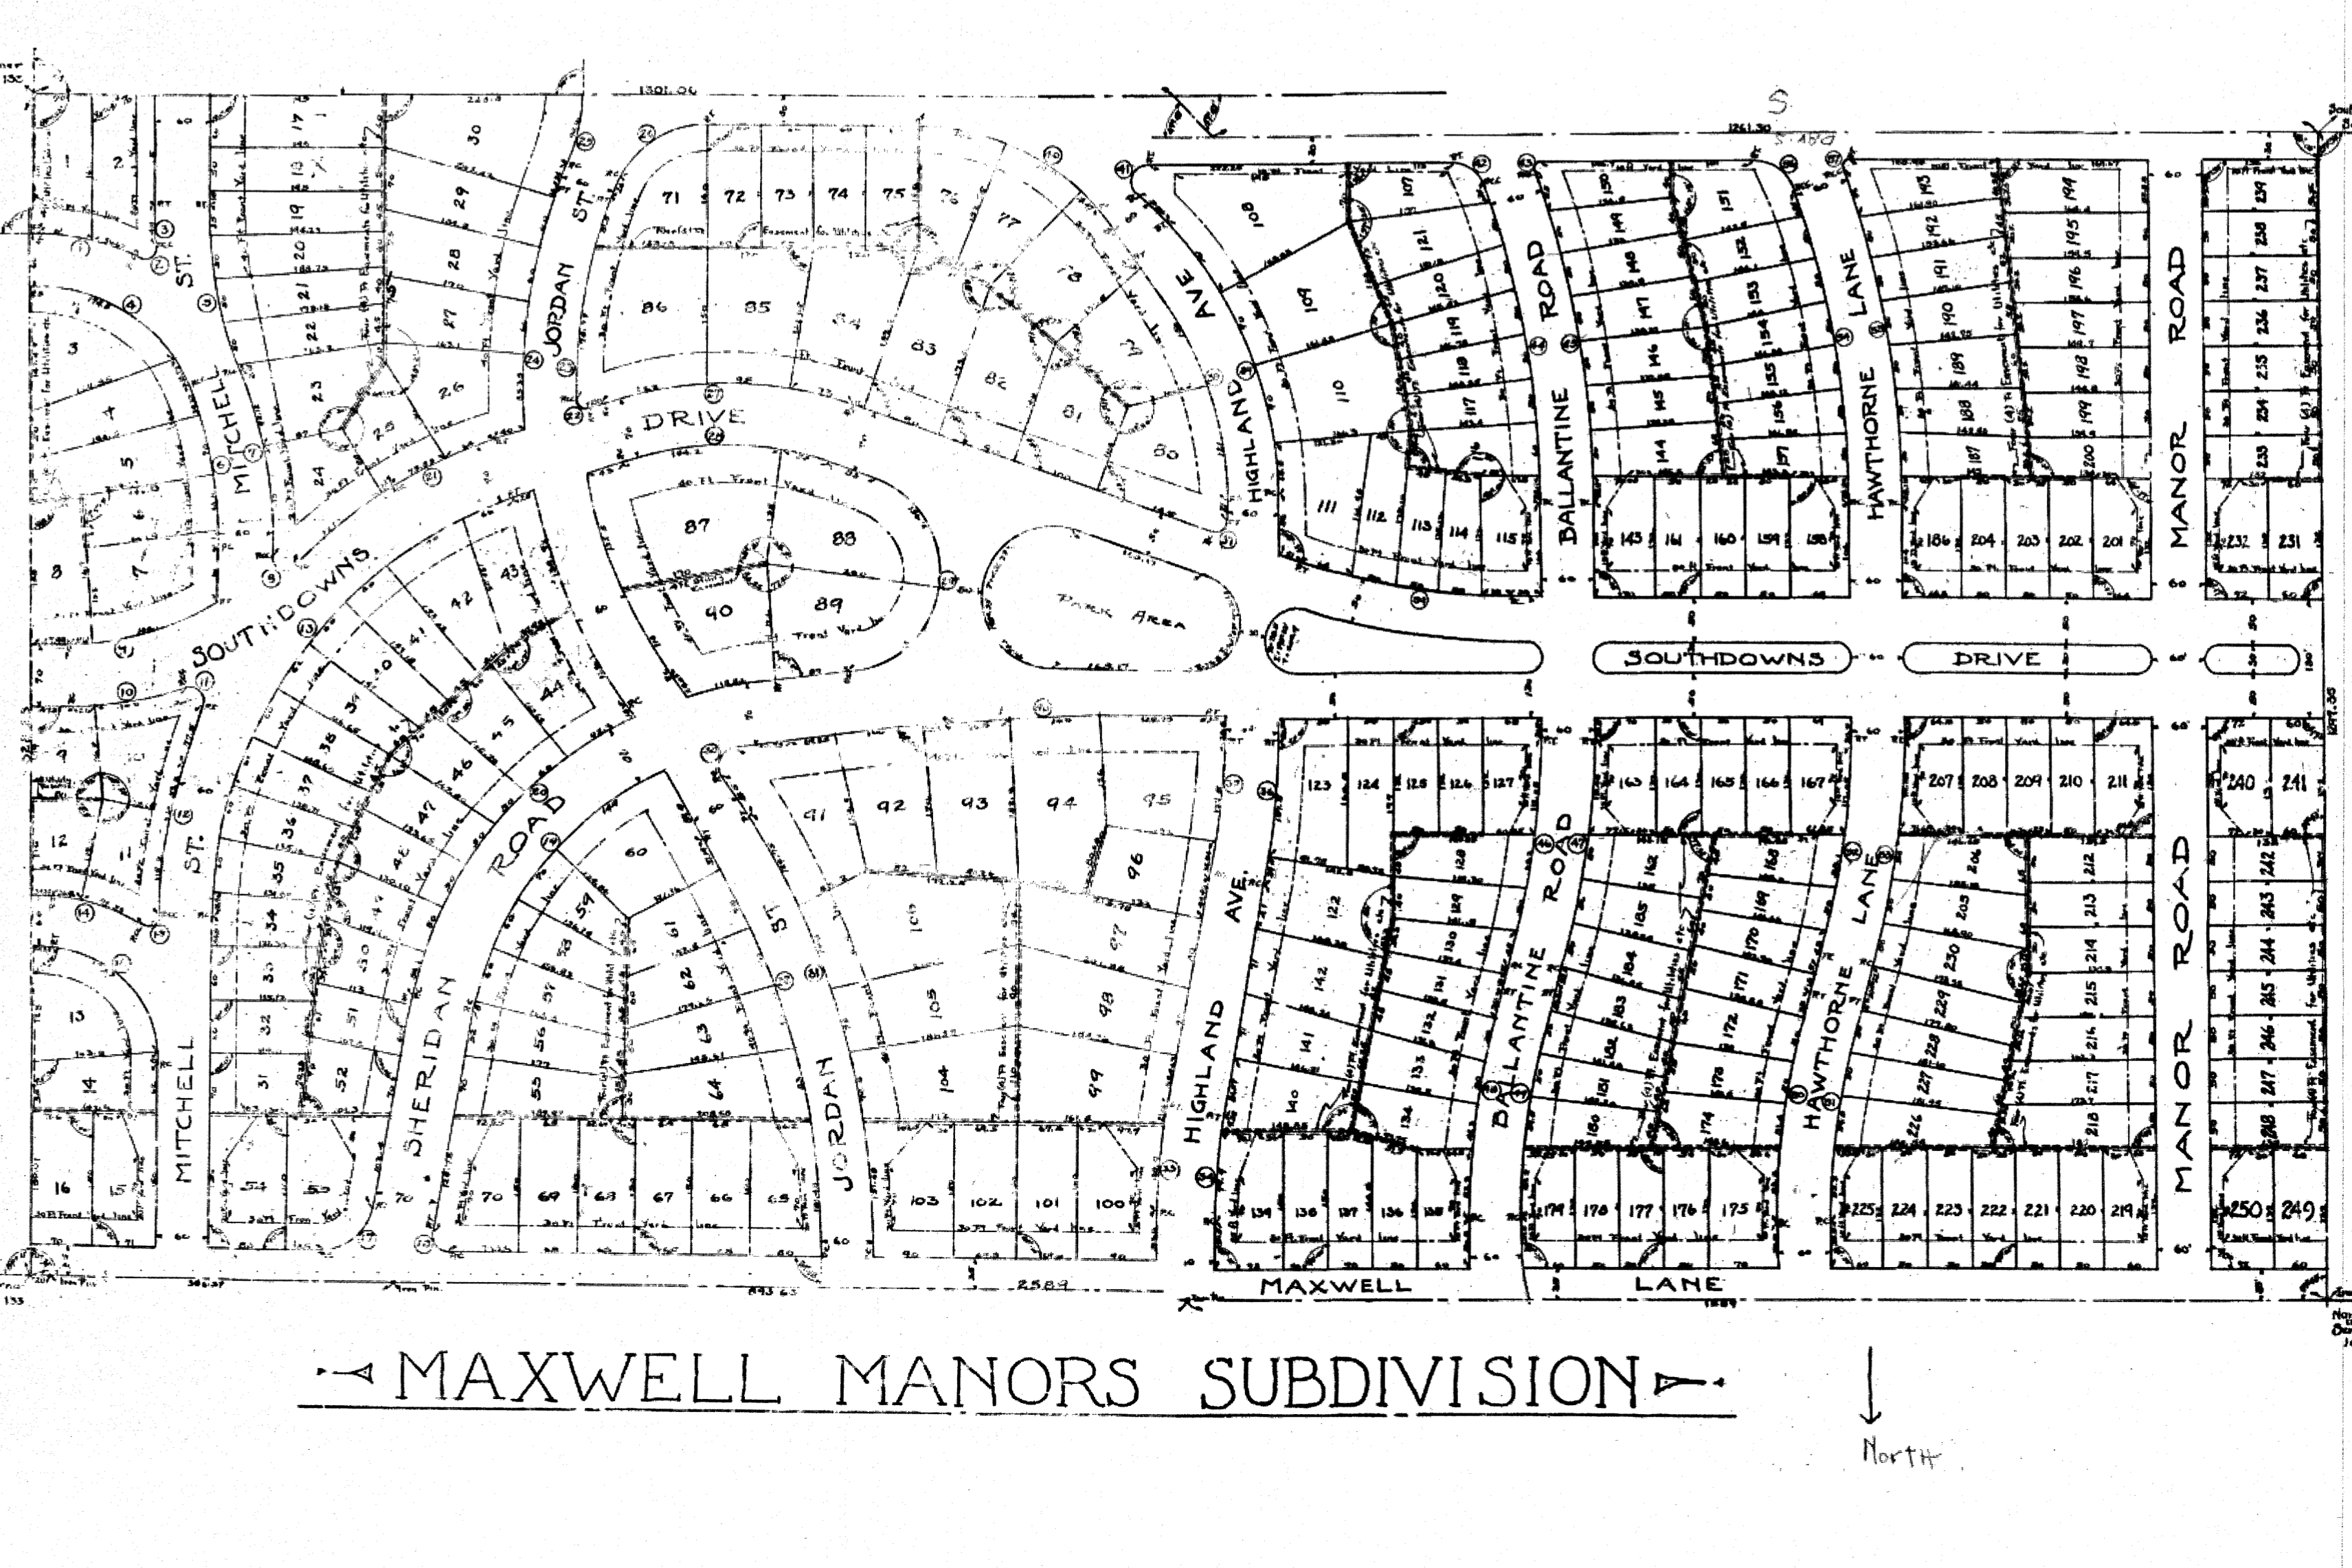 Maxwell Manors subdivision